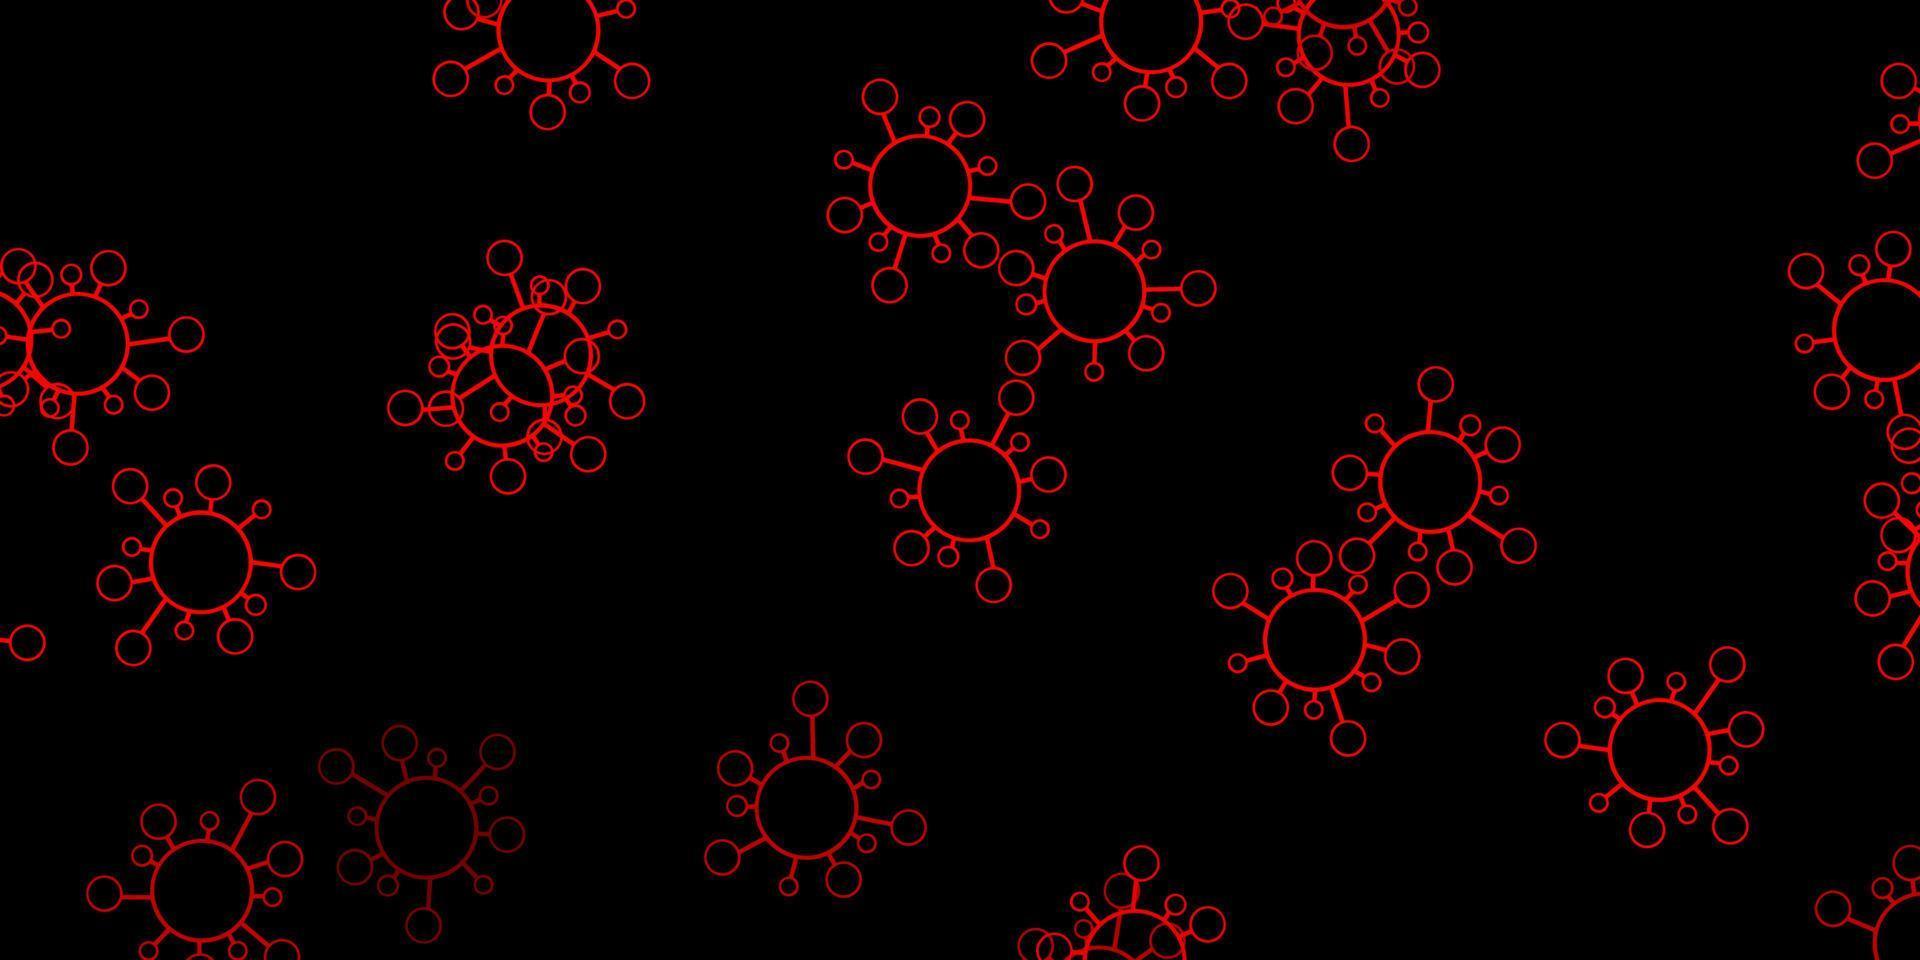 sfondo vettoriale rosso scuro, giallo con simboli di virus.